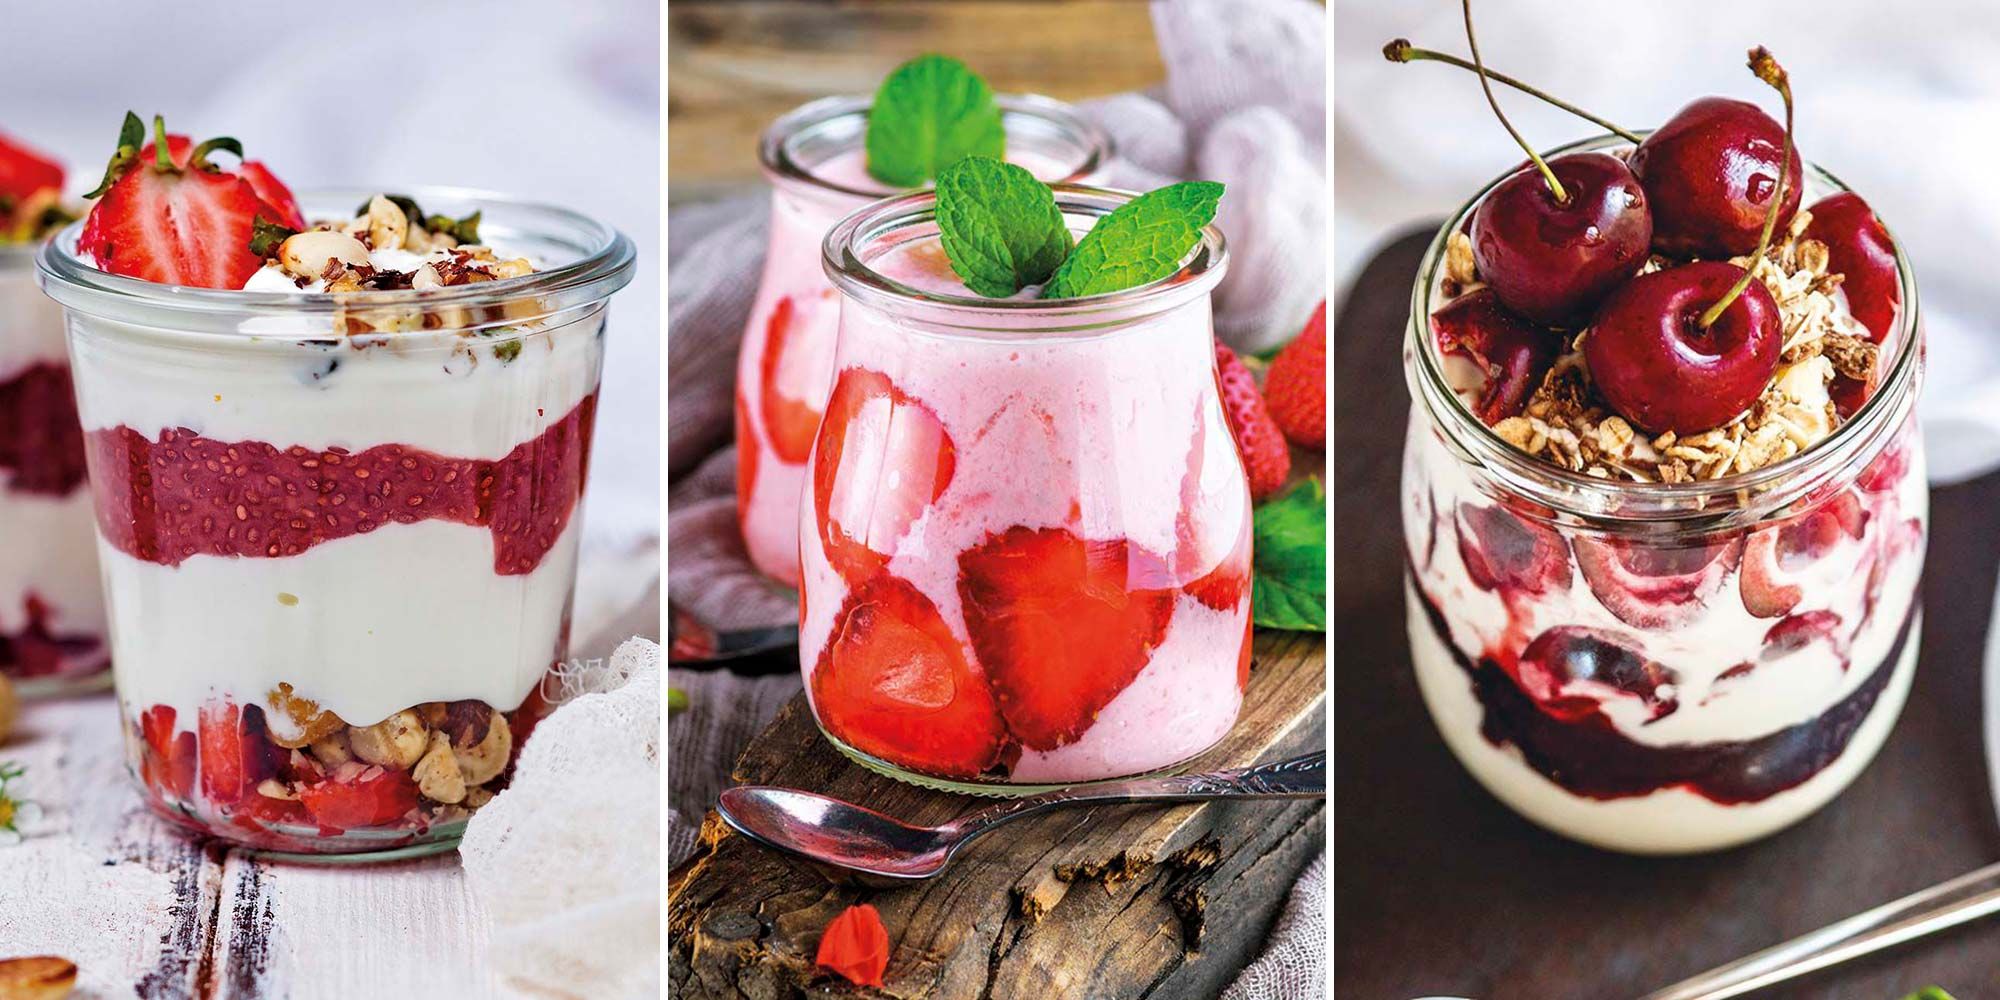 12 Postres con yogures caseros, fáciles y saludables